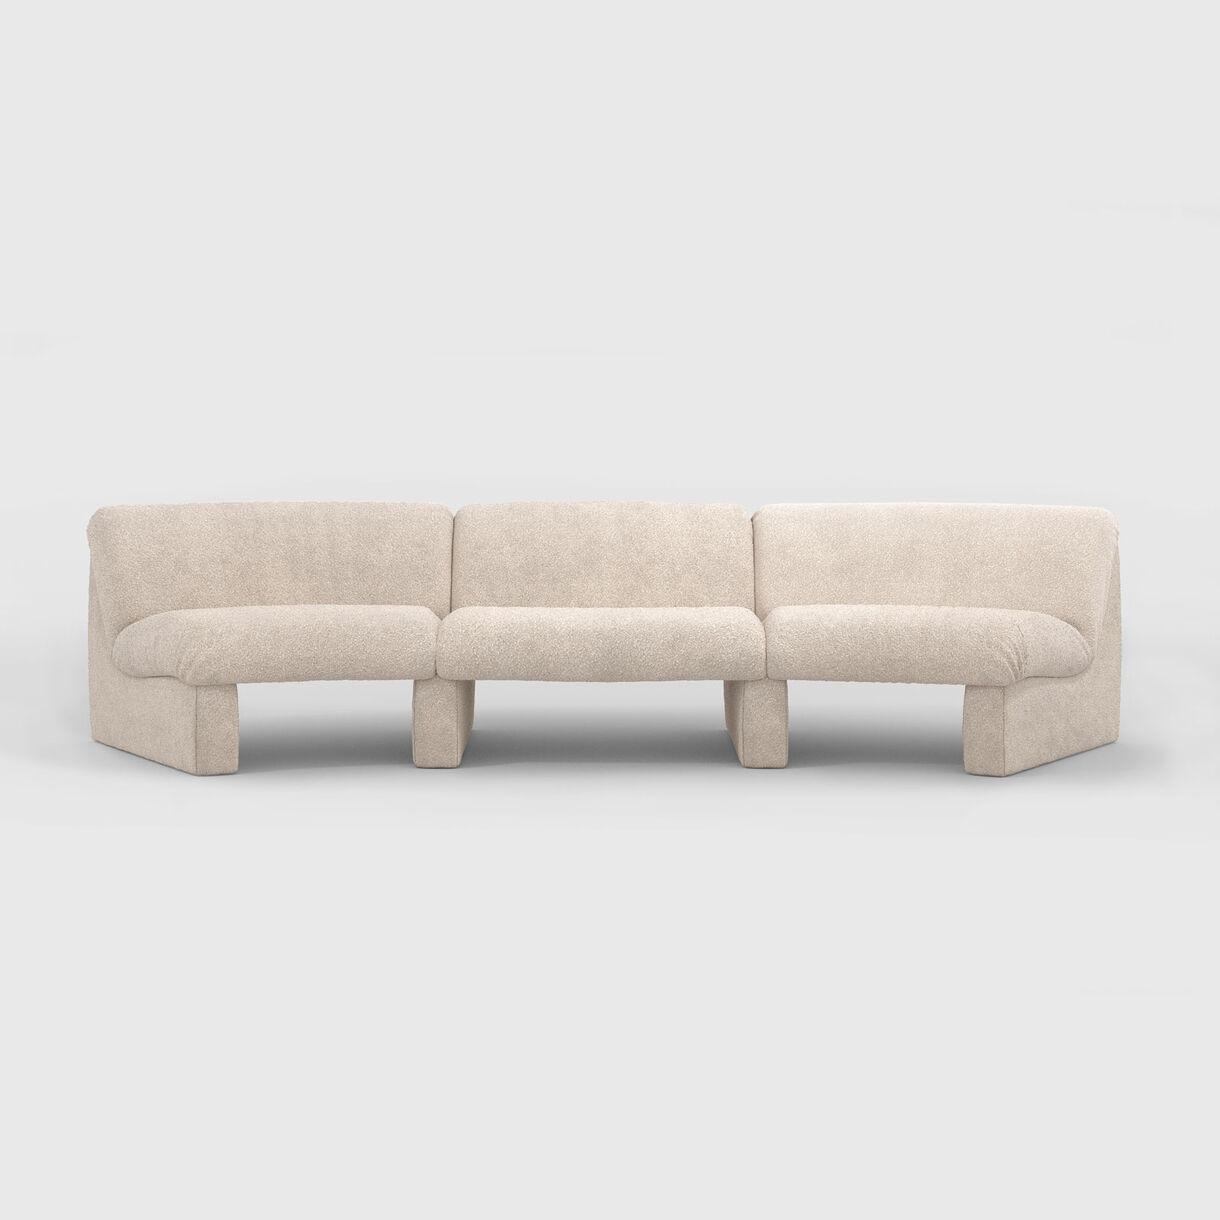 Snow Modular Sofa